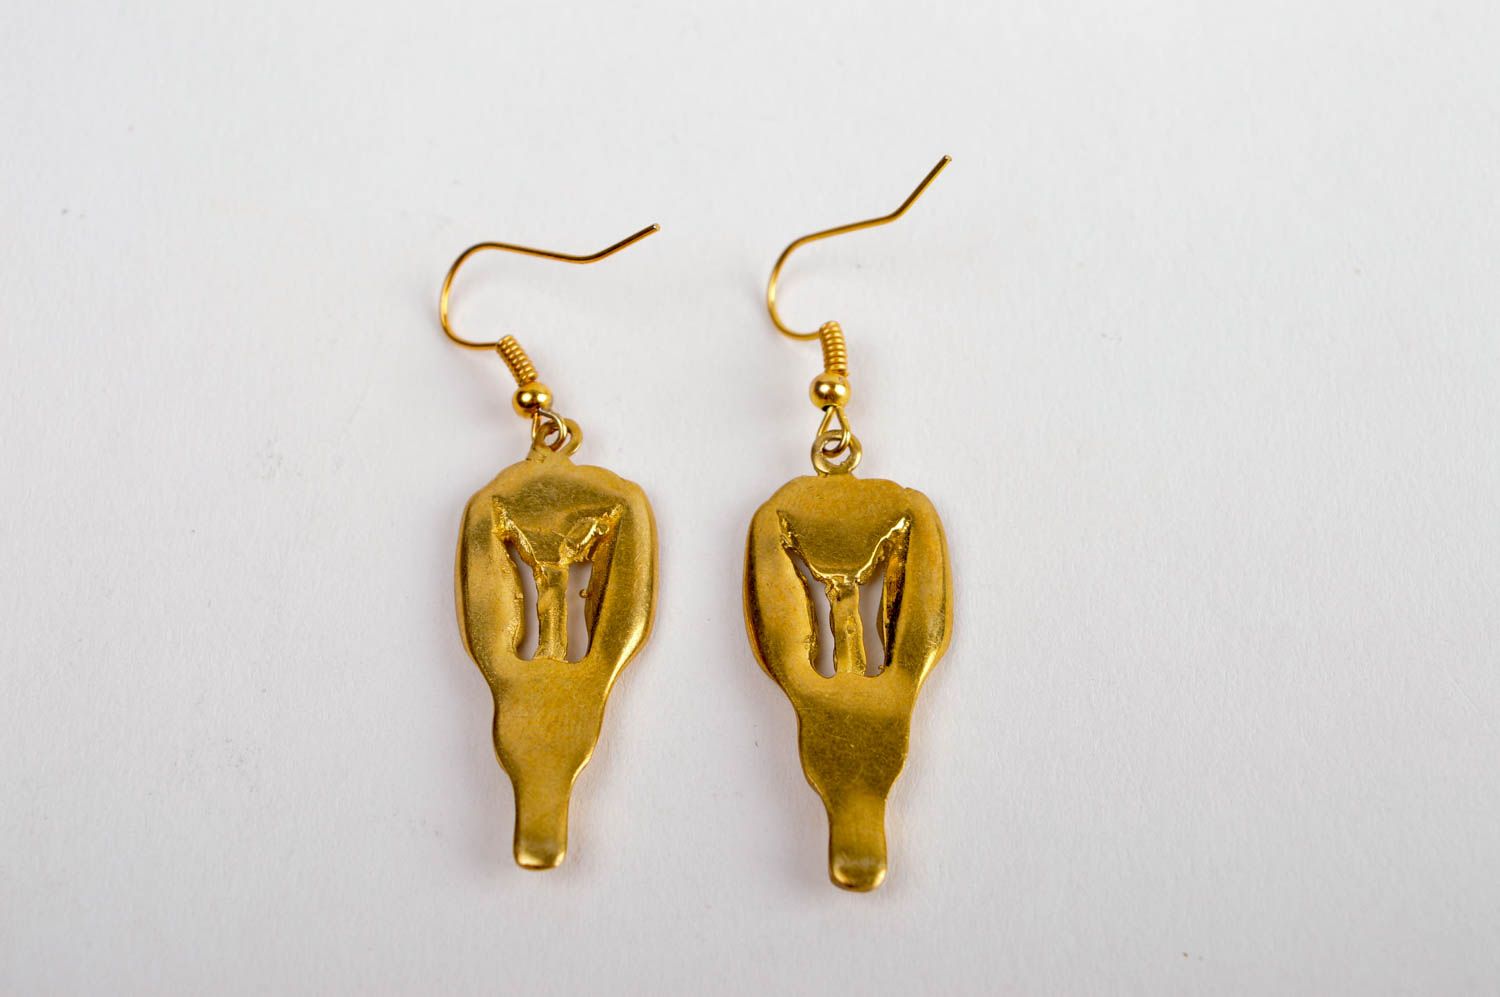 Metall Schmuck handmade ungewöhnlich lange Ohrhänger Ohrringe für Damen schön foto 4